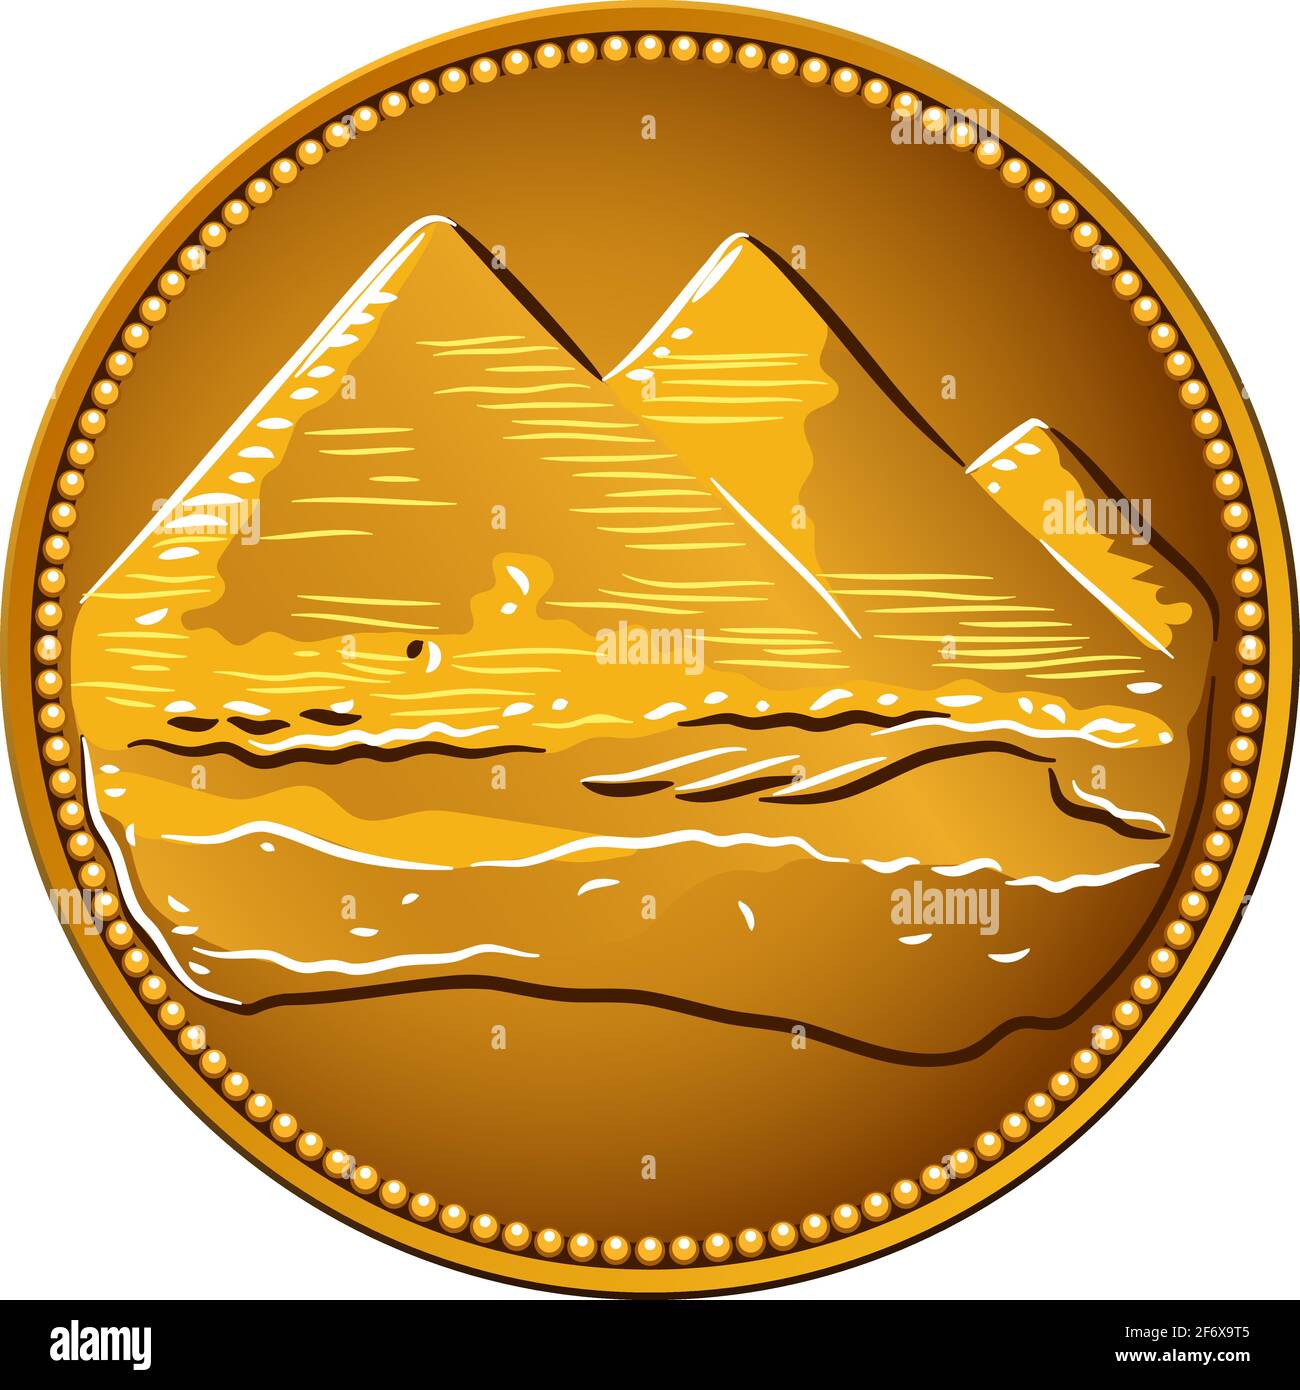 Arabische Republik Ägypten, ägyptische Münze zu fünf Piastres, Vorderseite mit 3 Pyramiden von Gizeh Stock Vektor